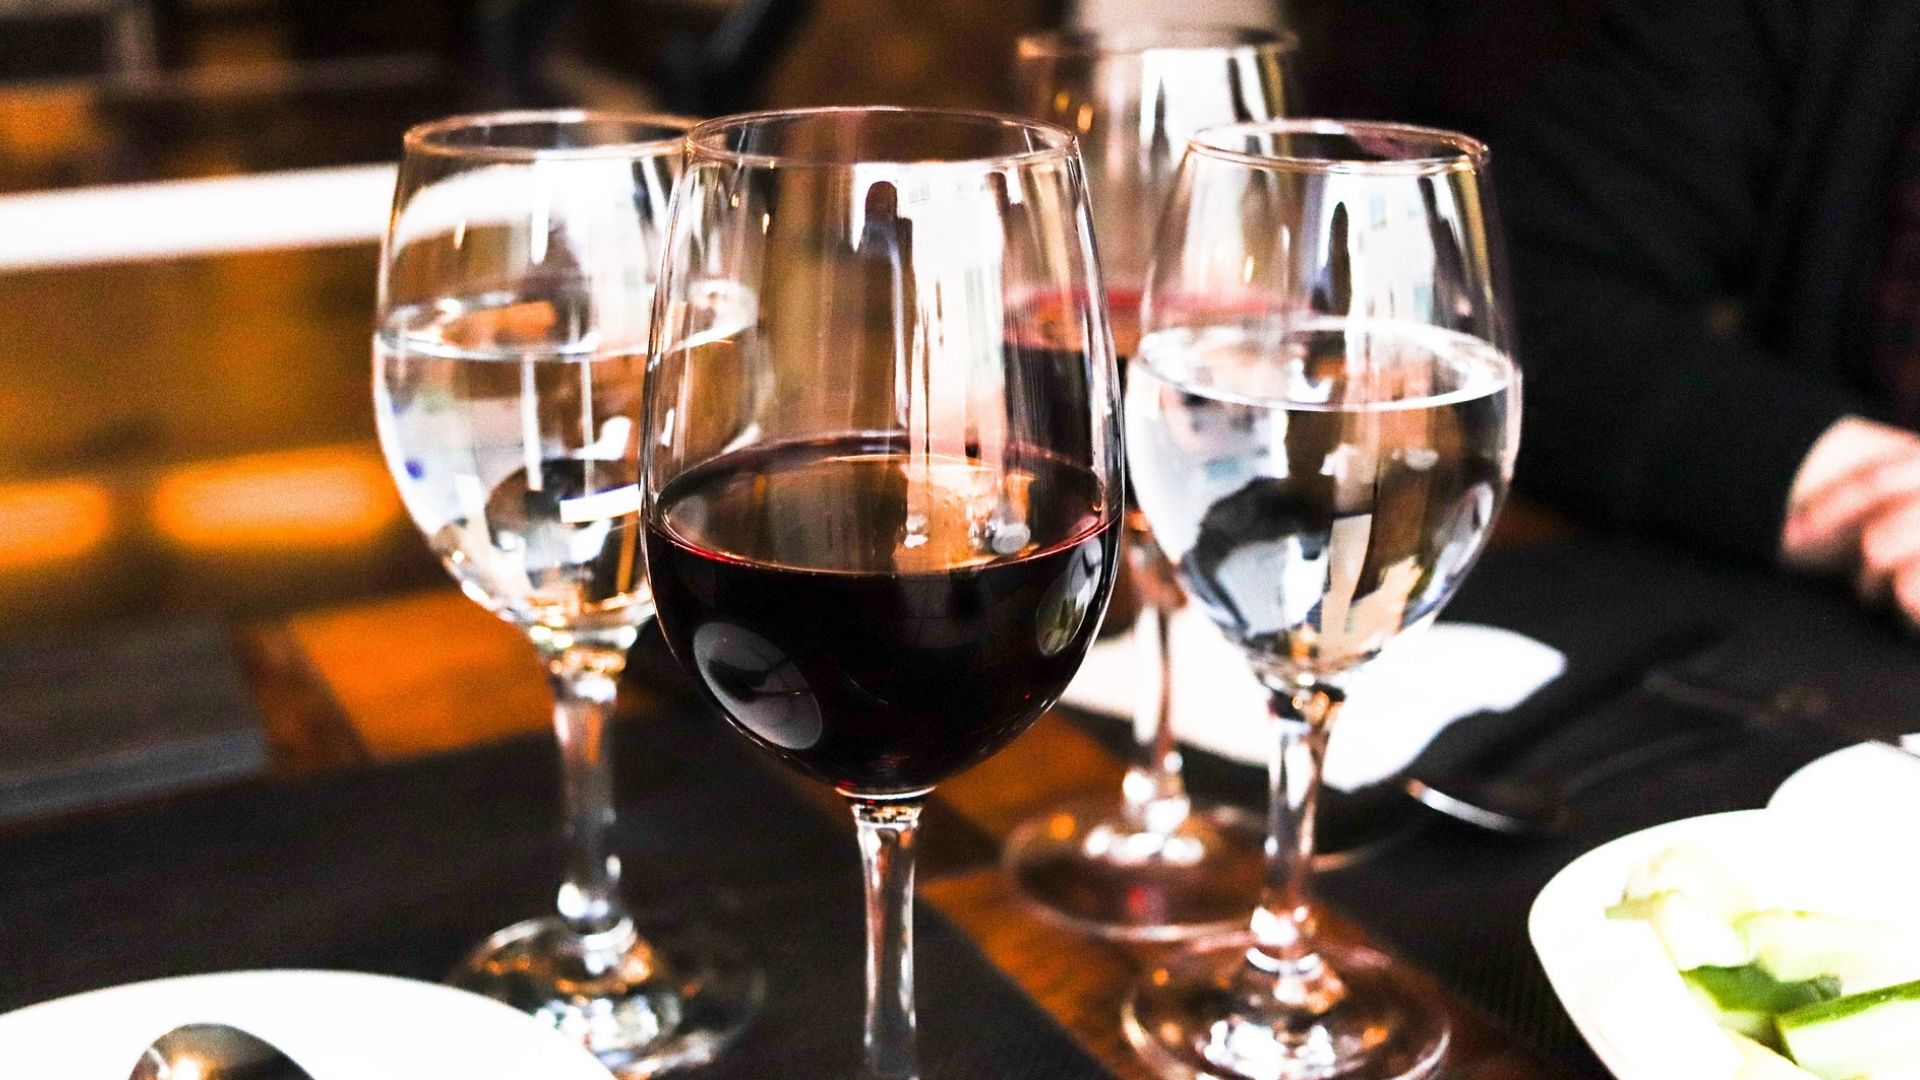 Vinhos no restaurante: 5 boas práticas para não passar vergonha.